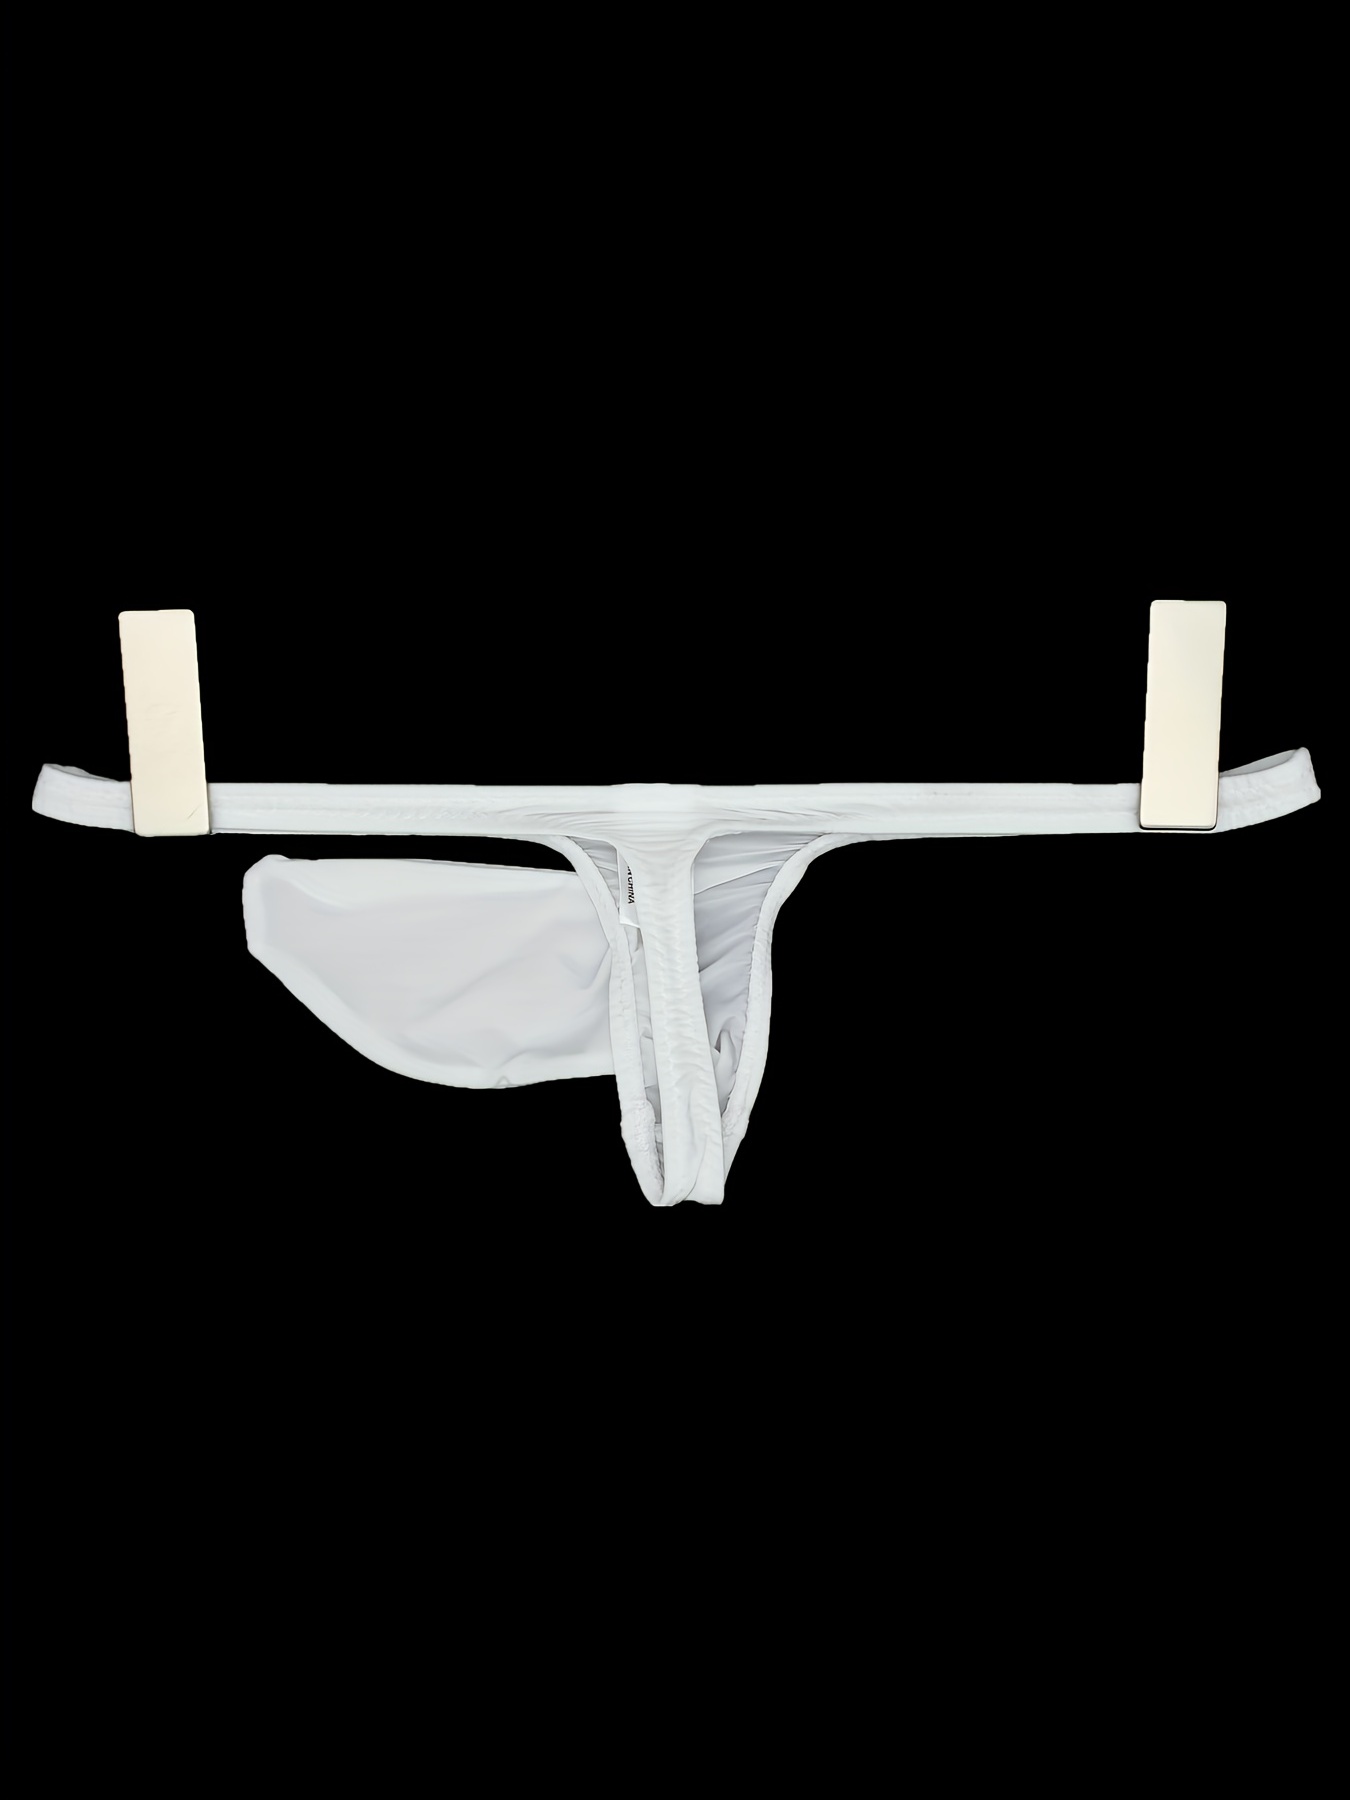 Men's Hot Sexy Elephant G-String Underwear Thong Brief